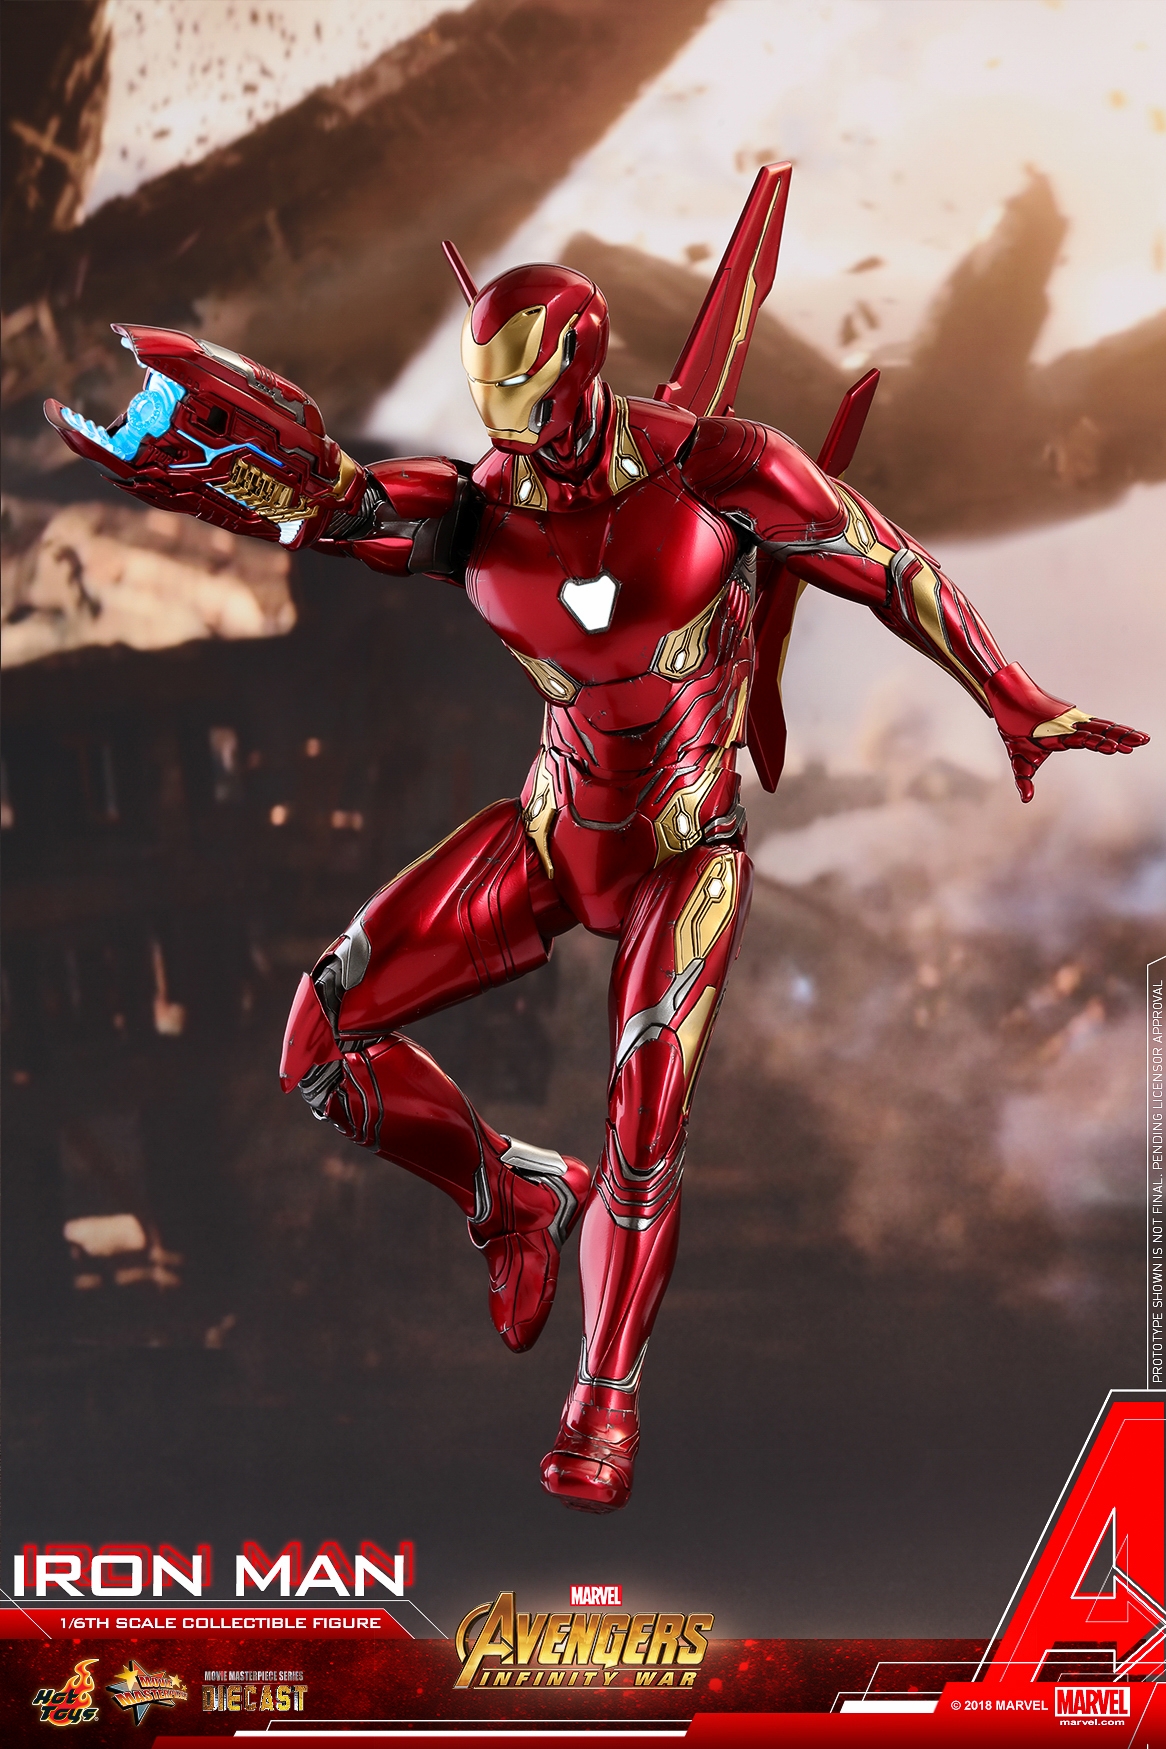 Hot-Toys-MMS473D23-Avengers-Infinity-War-Iron-Man-Collectible-Figure-001.jpg